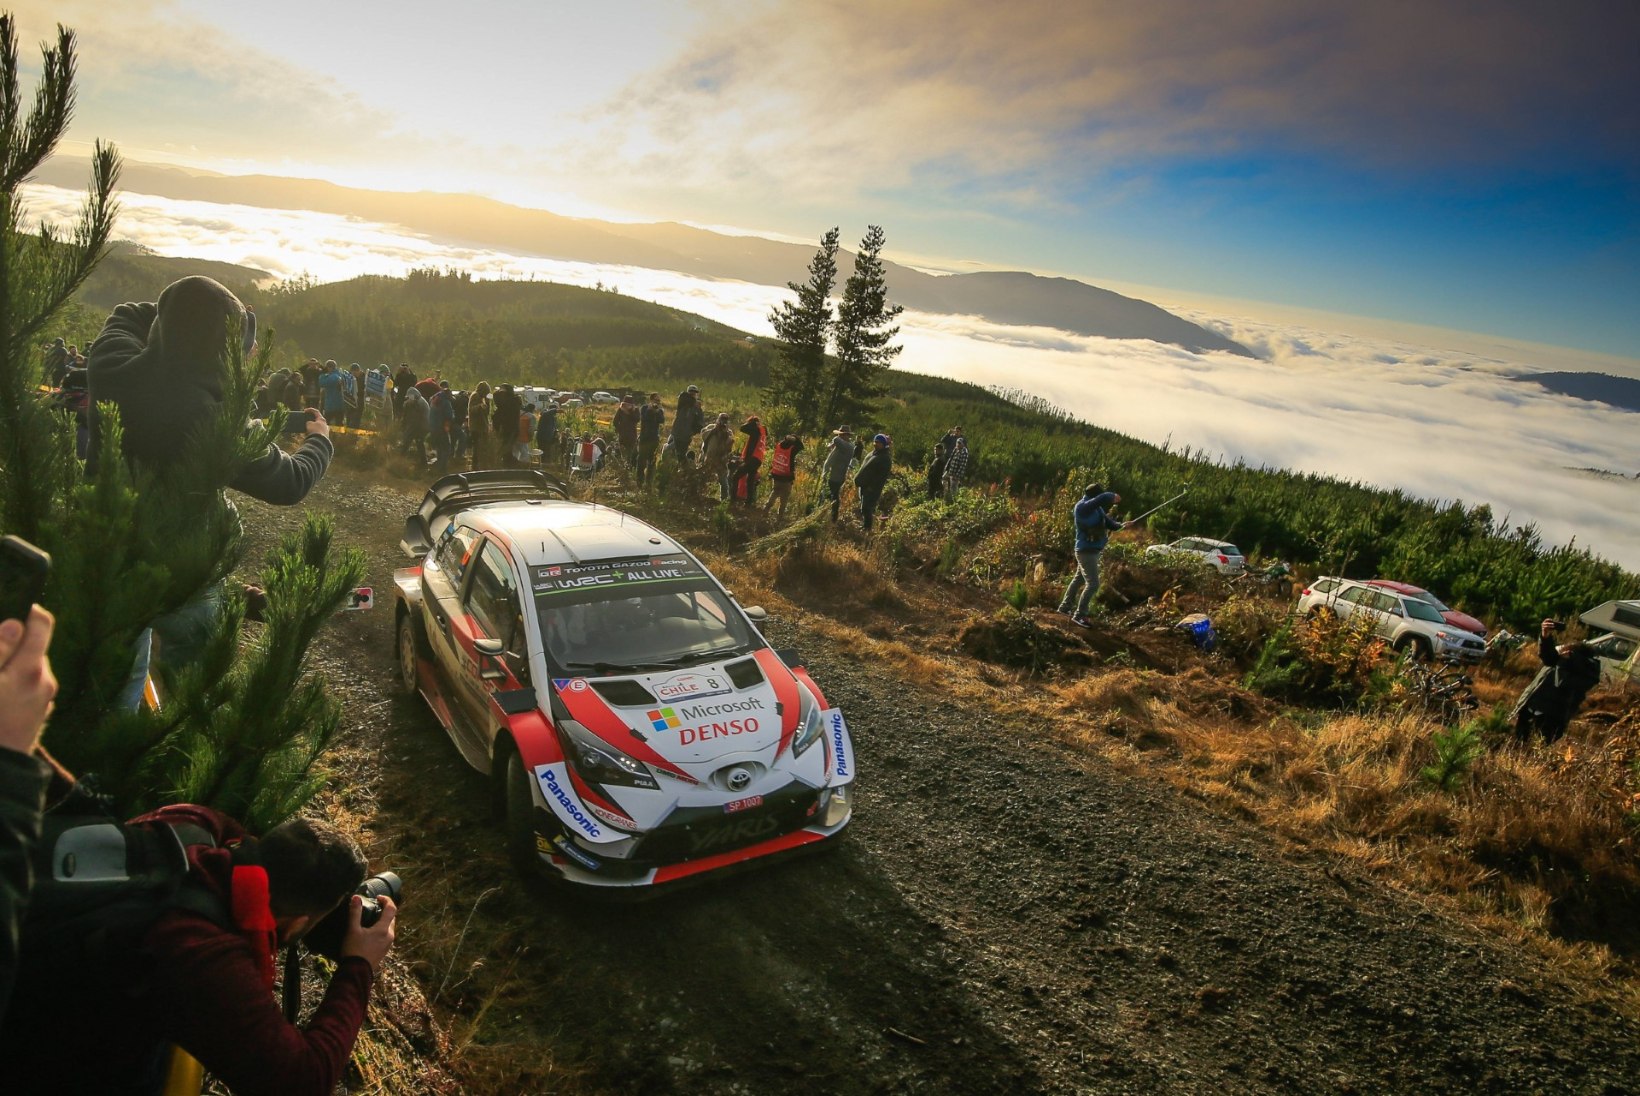 Hübriidmootoritele üleminek on WRC-tiimid ärevaks teinud: see läheb ajaliselt liiga napiks